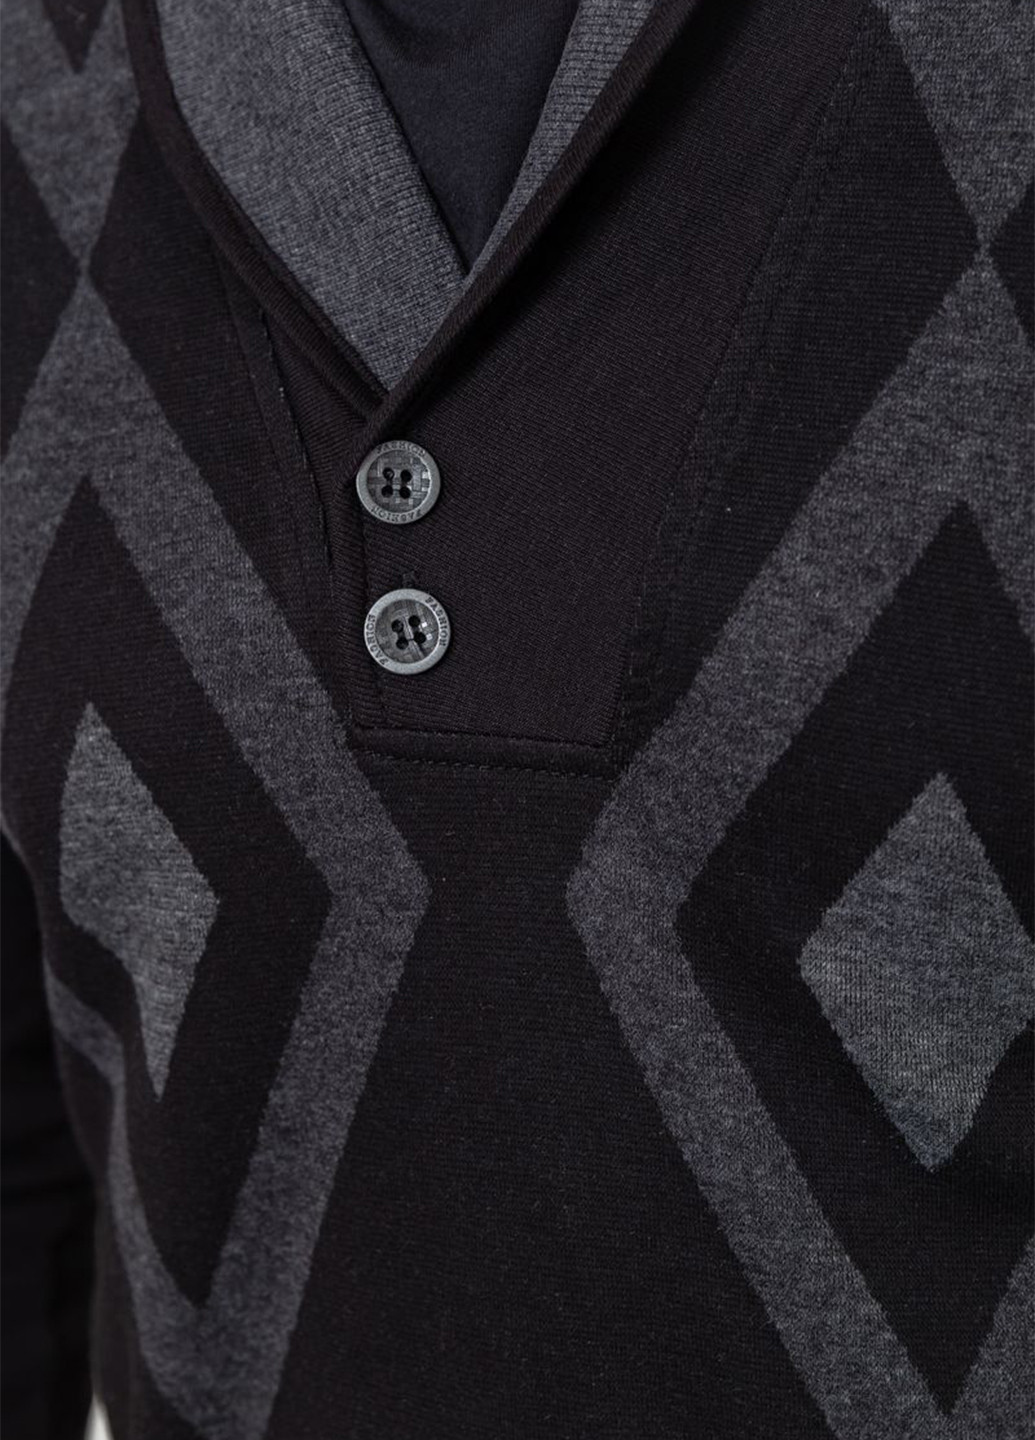 Чорний демісезонний пуловер пуловер Ager